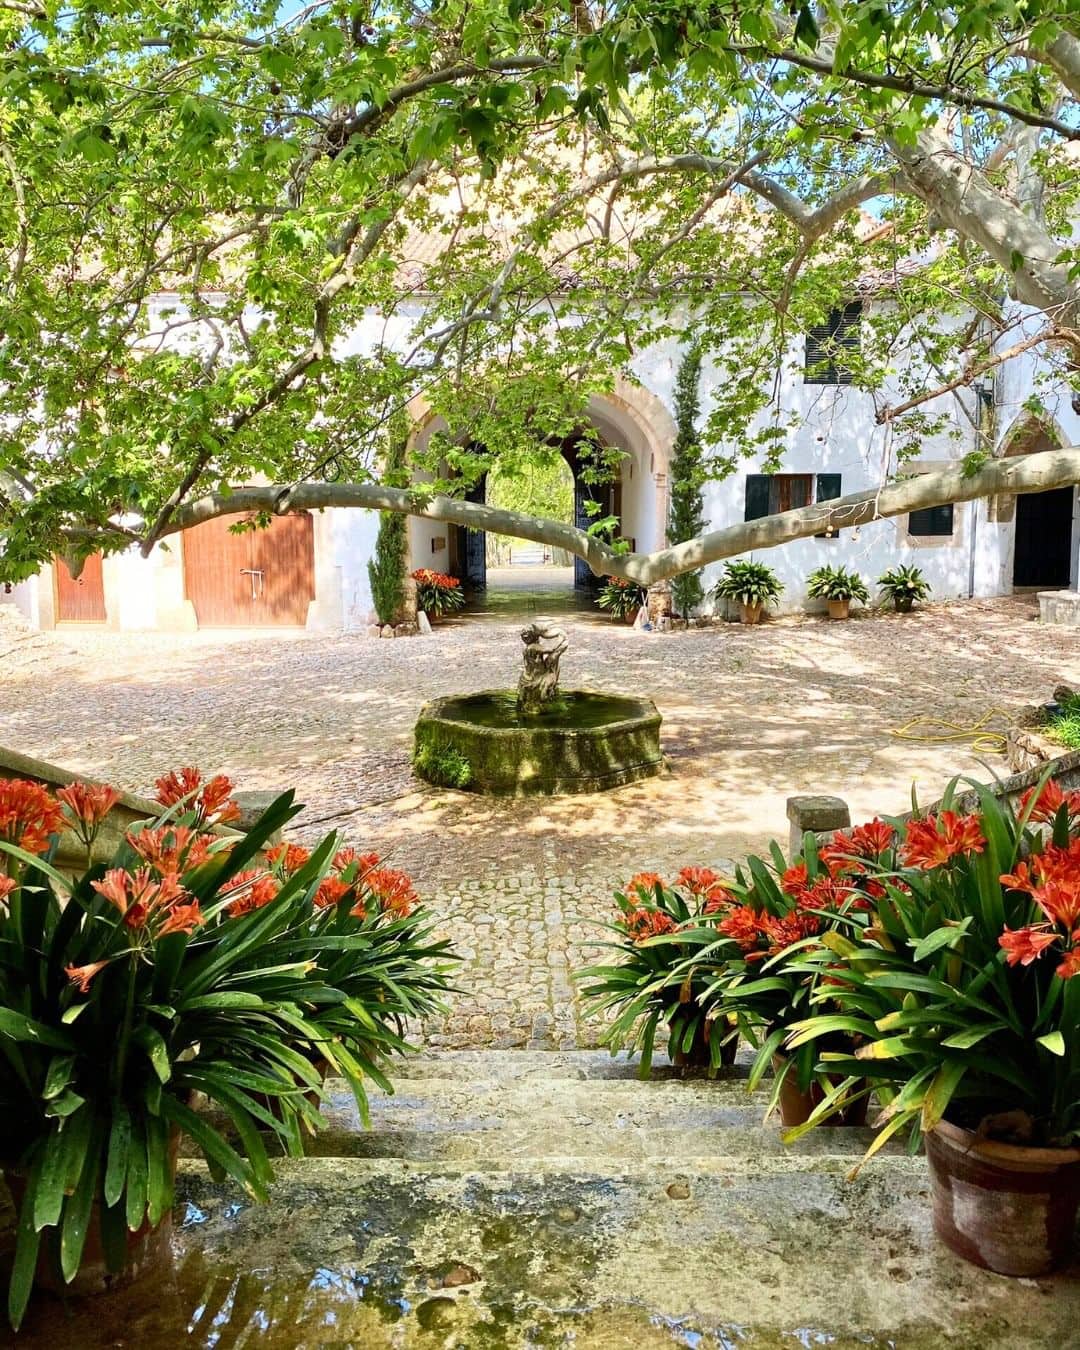 Encantadora plaza con fuente central en los jardines de Alfabia en Mallorca, rodeada de coloridas flores.